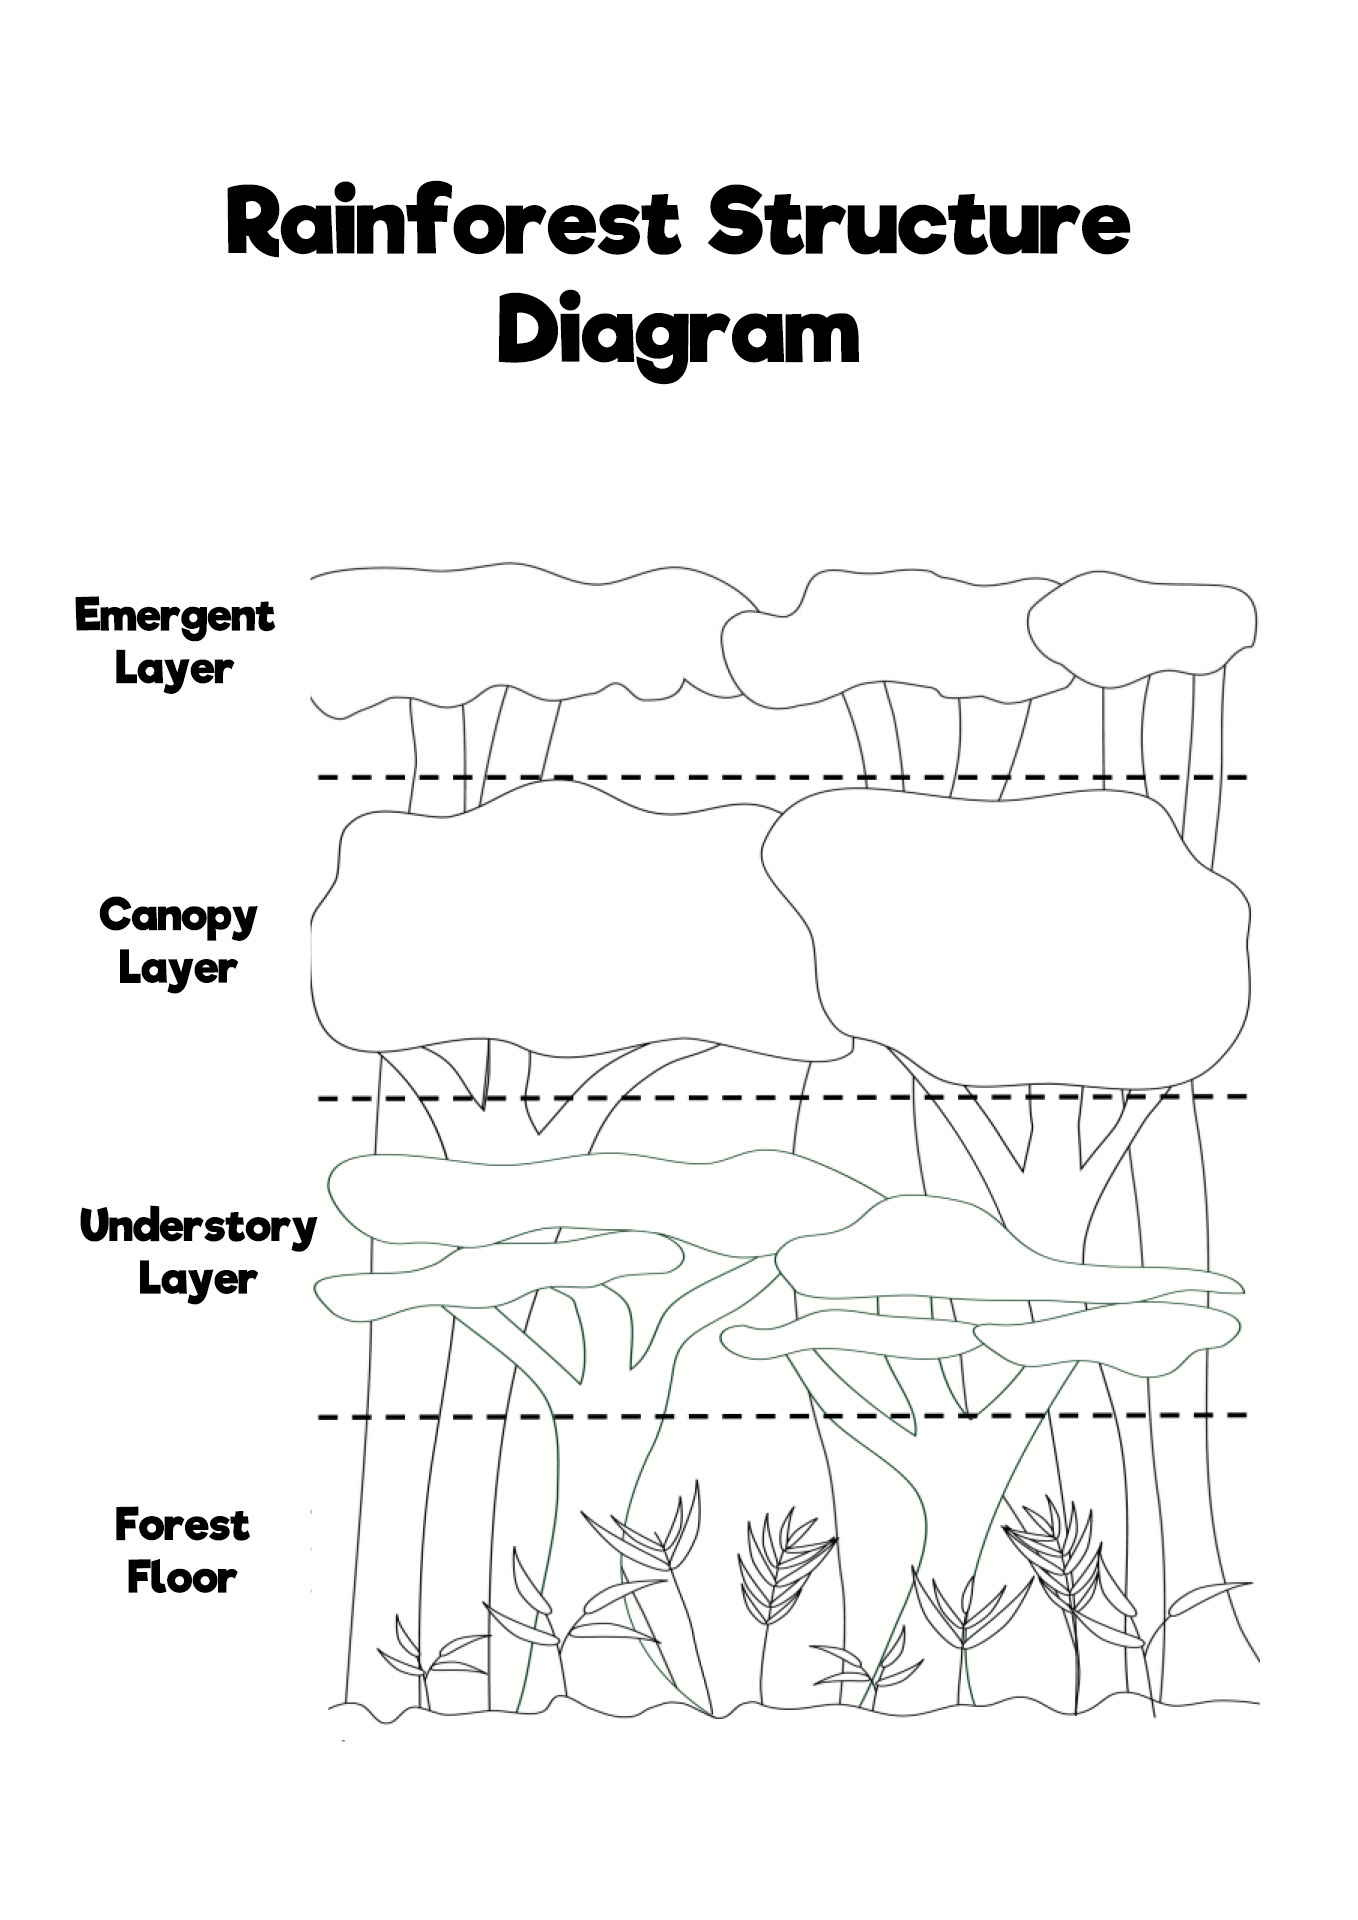 Rainforest Structure Diagram